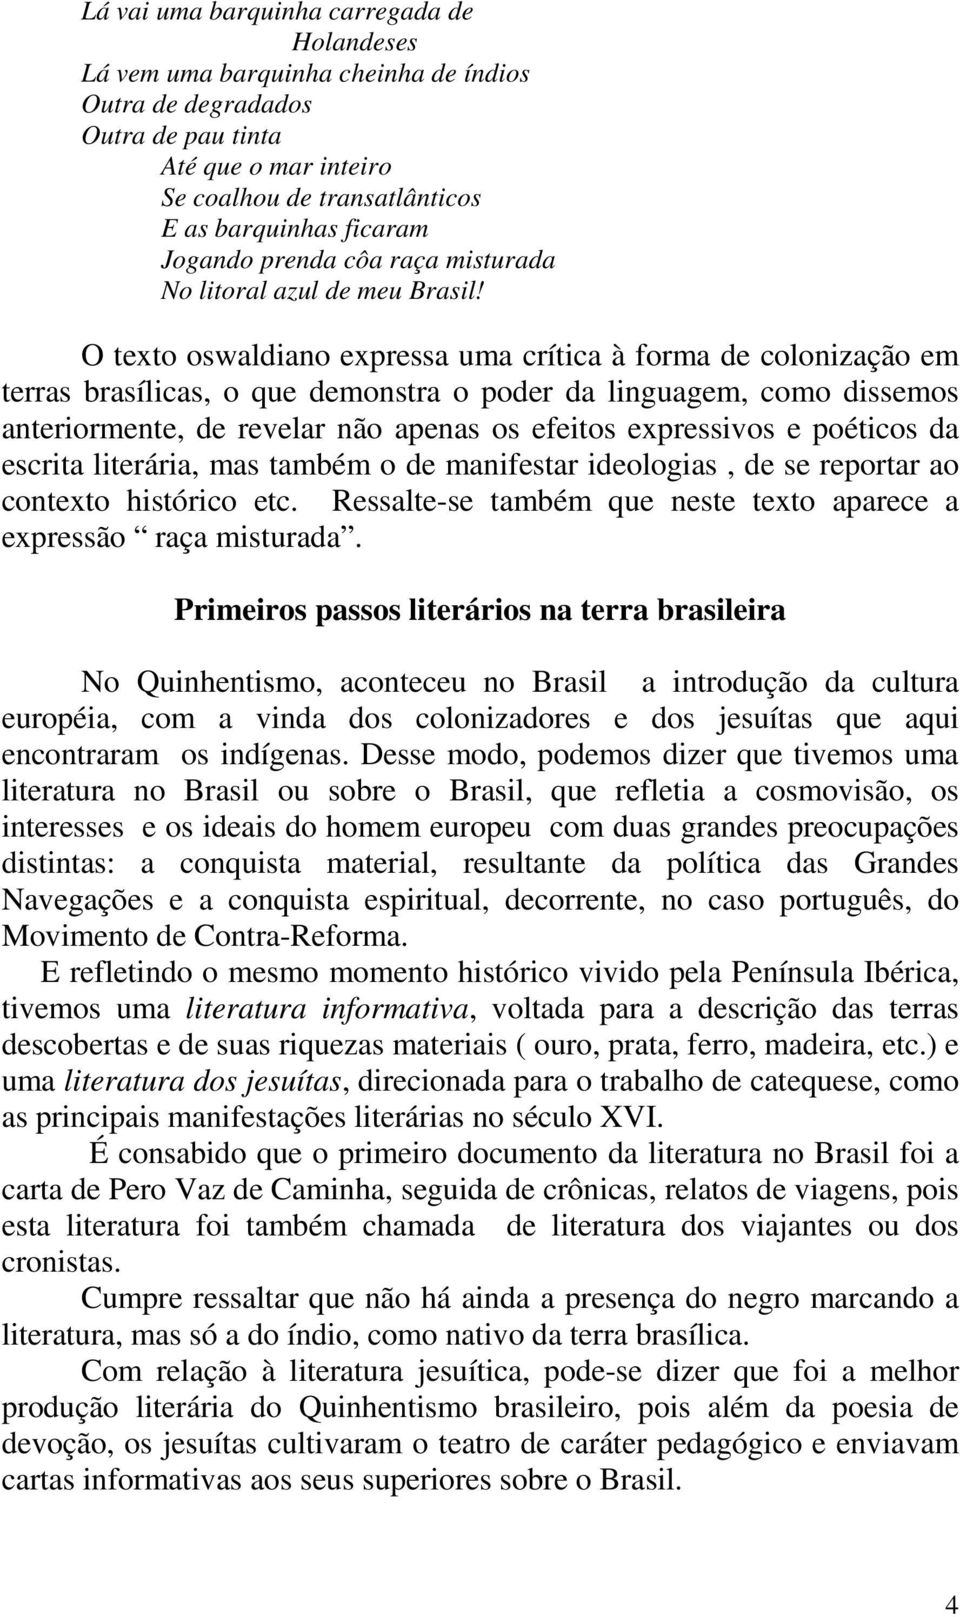 O texto oswaldiano expressa uma crítica à forma de colonização em terras brasílicas, o que demonstra o poder da linguagem, como dissemos anteriormente, de revelar não apenas os efeitos expressivos e